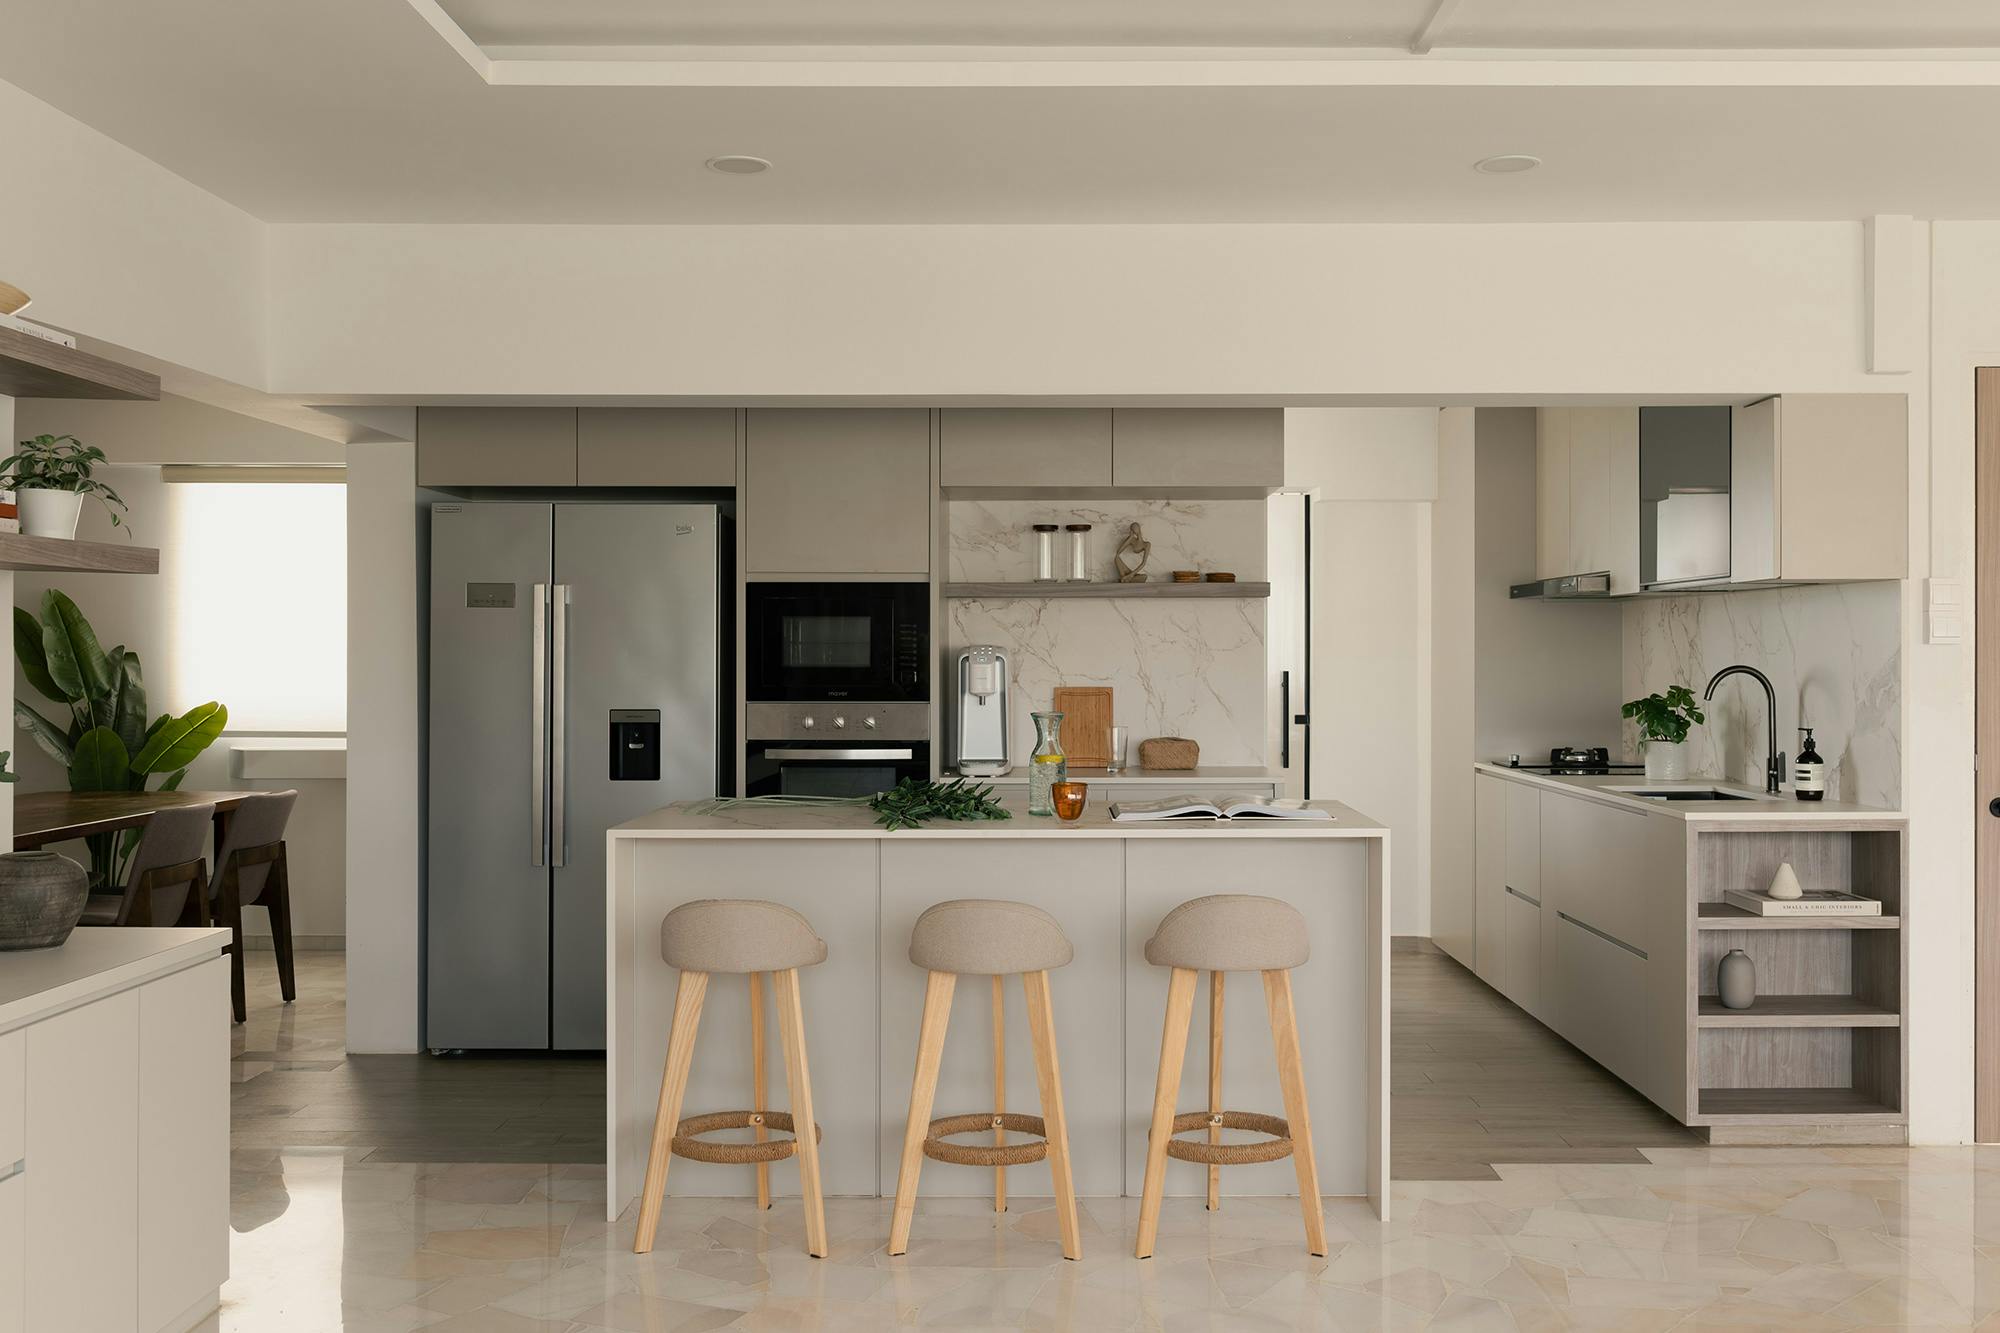 Numéro d'image 42 de la section actuelle de Architect Pils Ferrer chooses DKTN for the renovation of her home, where the kitchen speaks for itself de Cosentino France